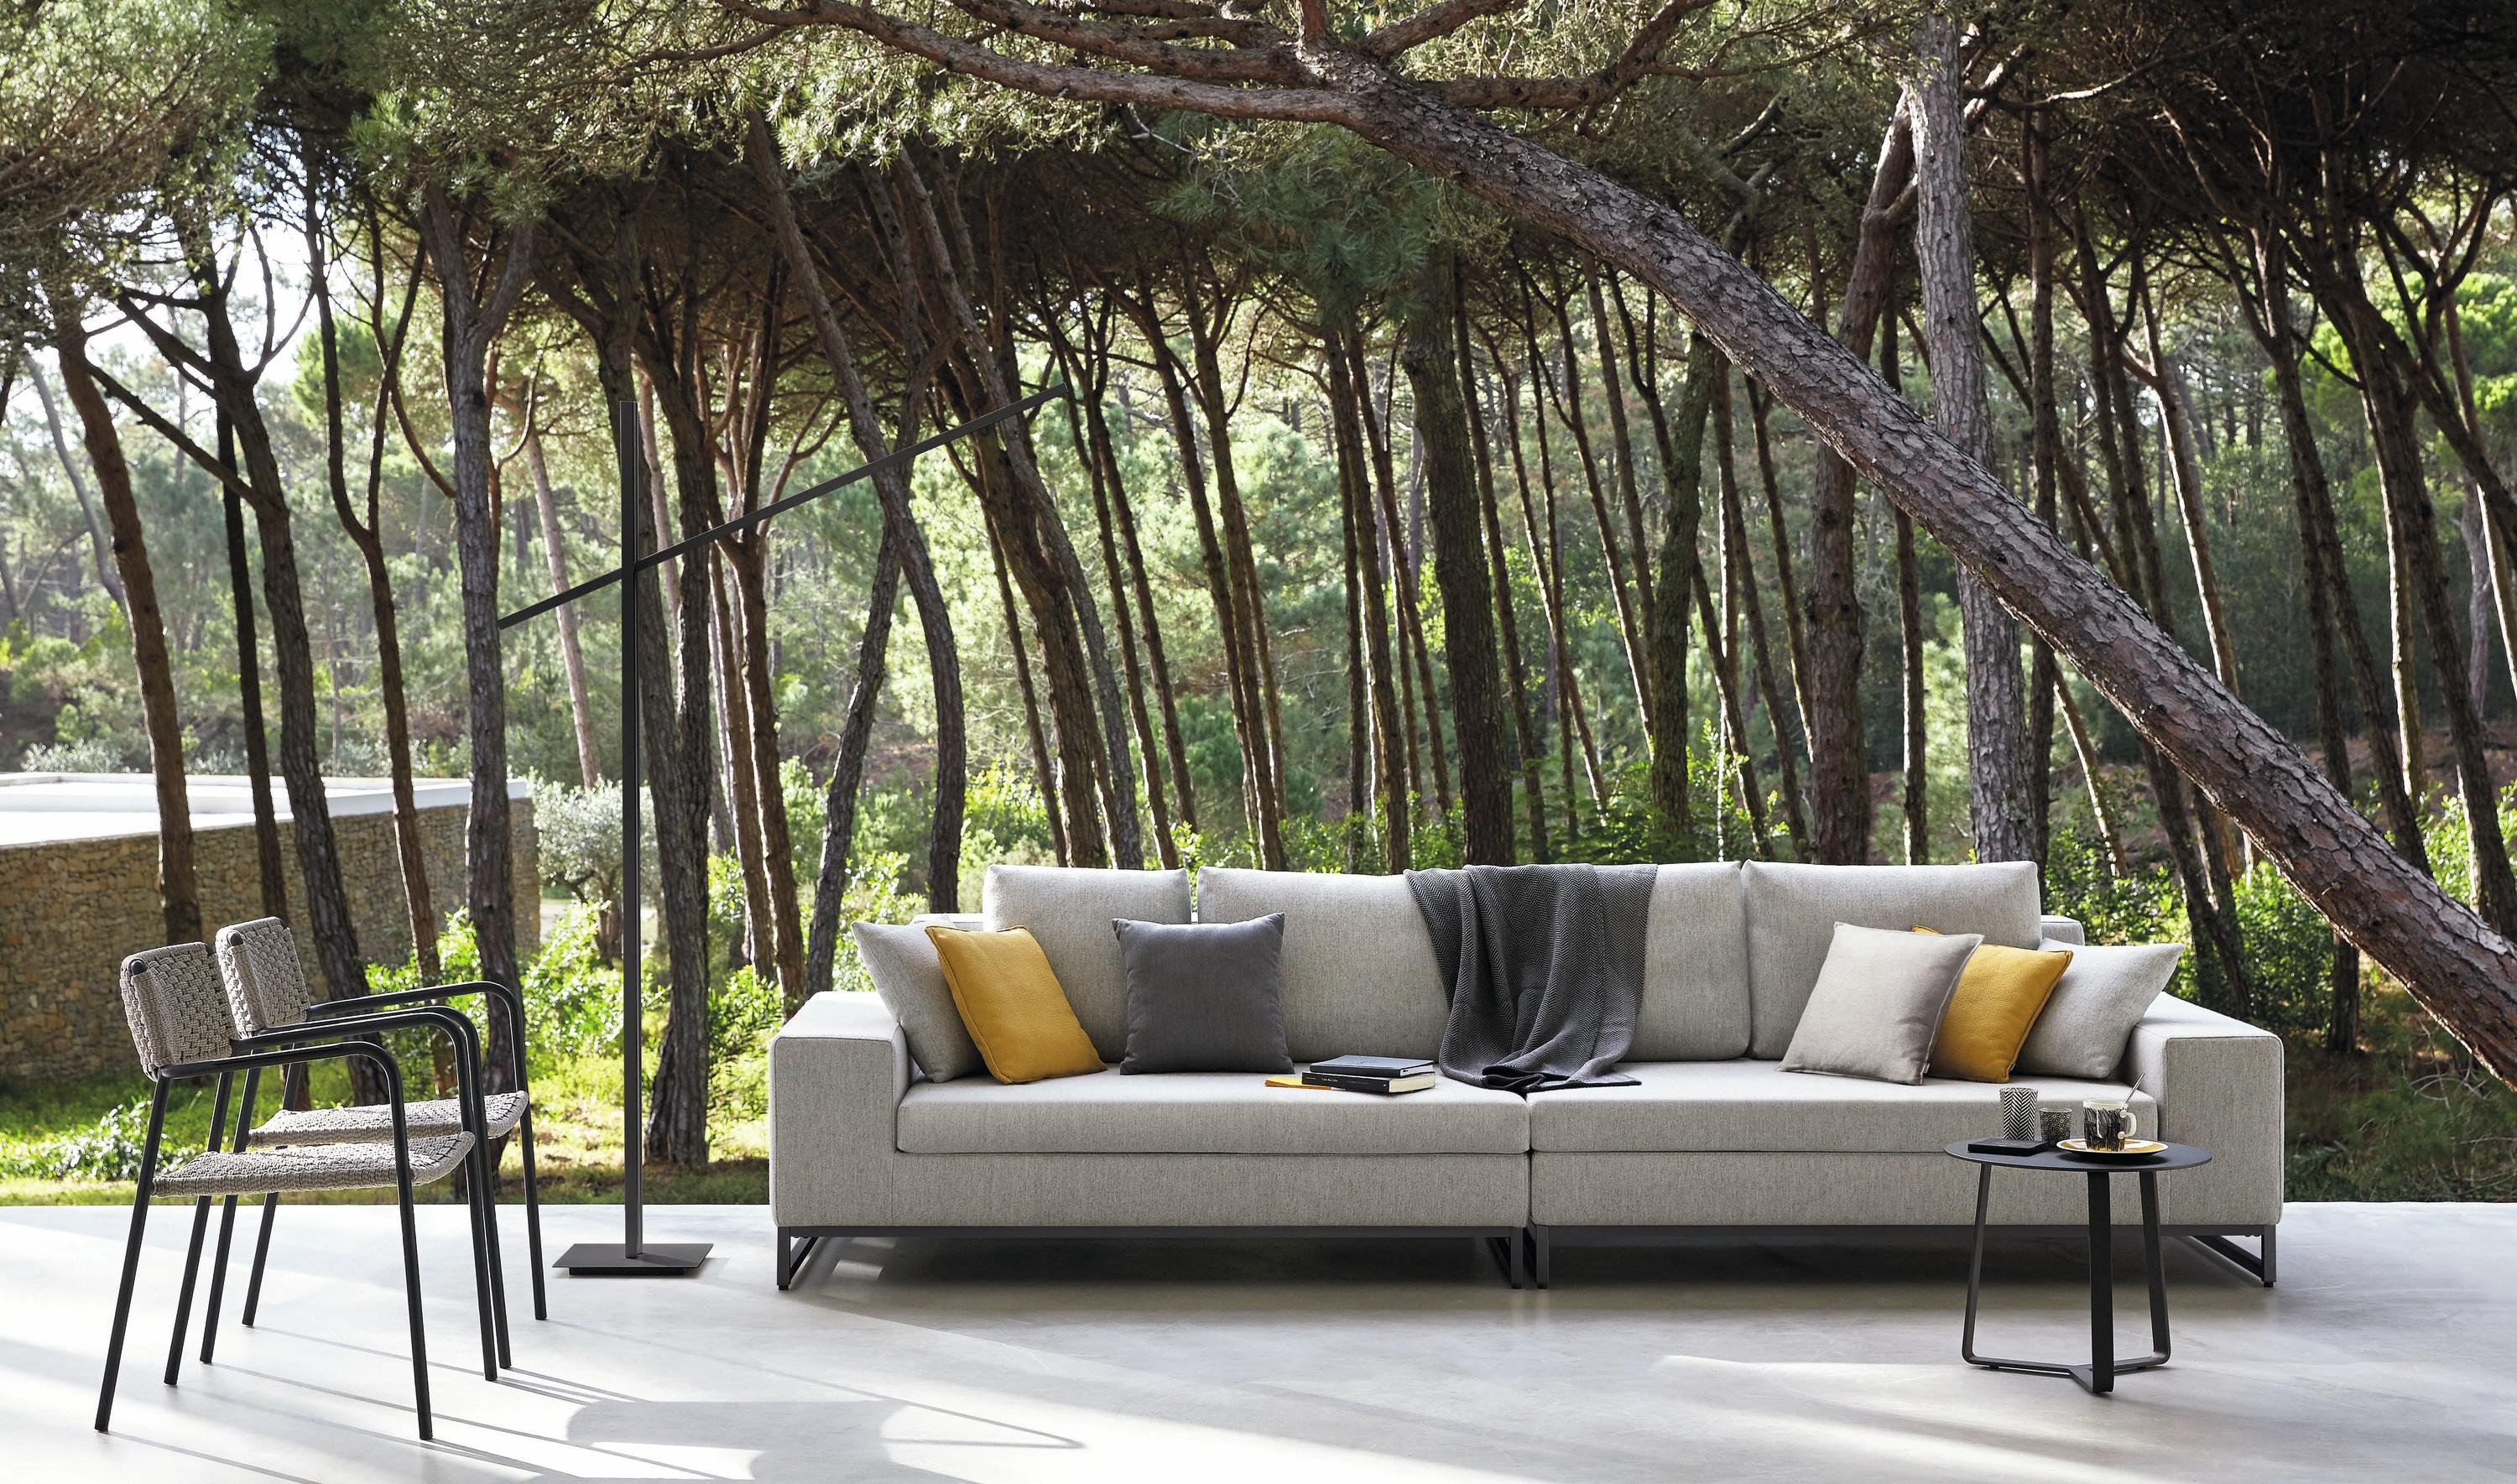 Zendo Sofa from Manutti, designed by Stephane De Winter